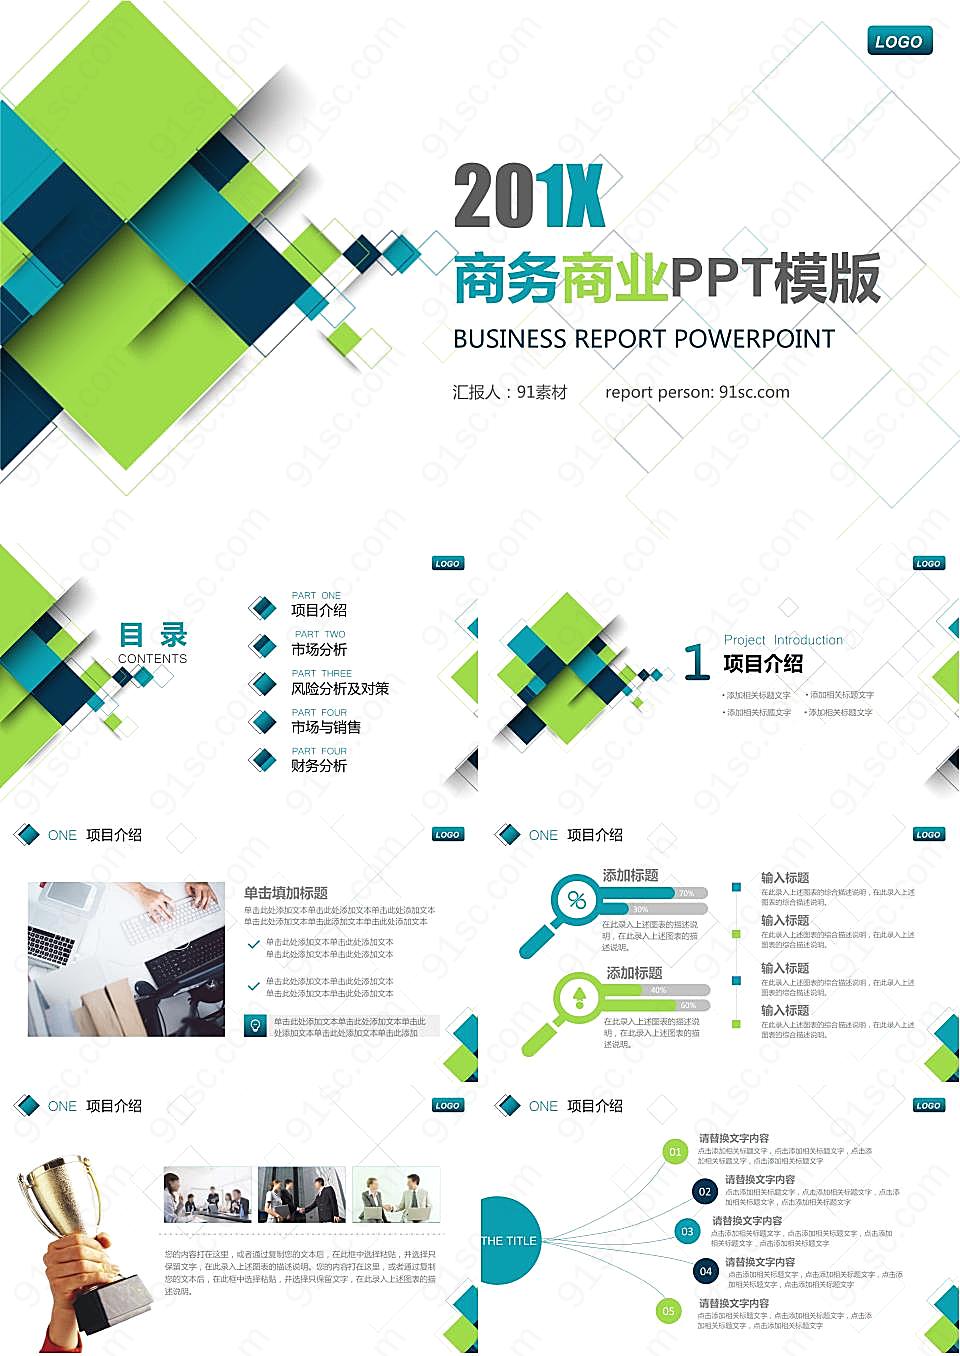 蓝绿配色的方块图形背景商业融资计划书PPT模板